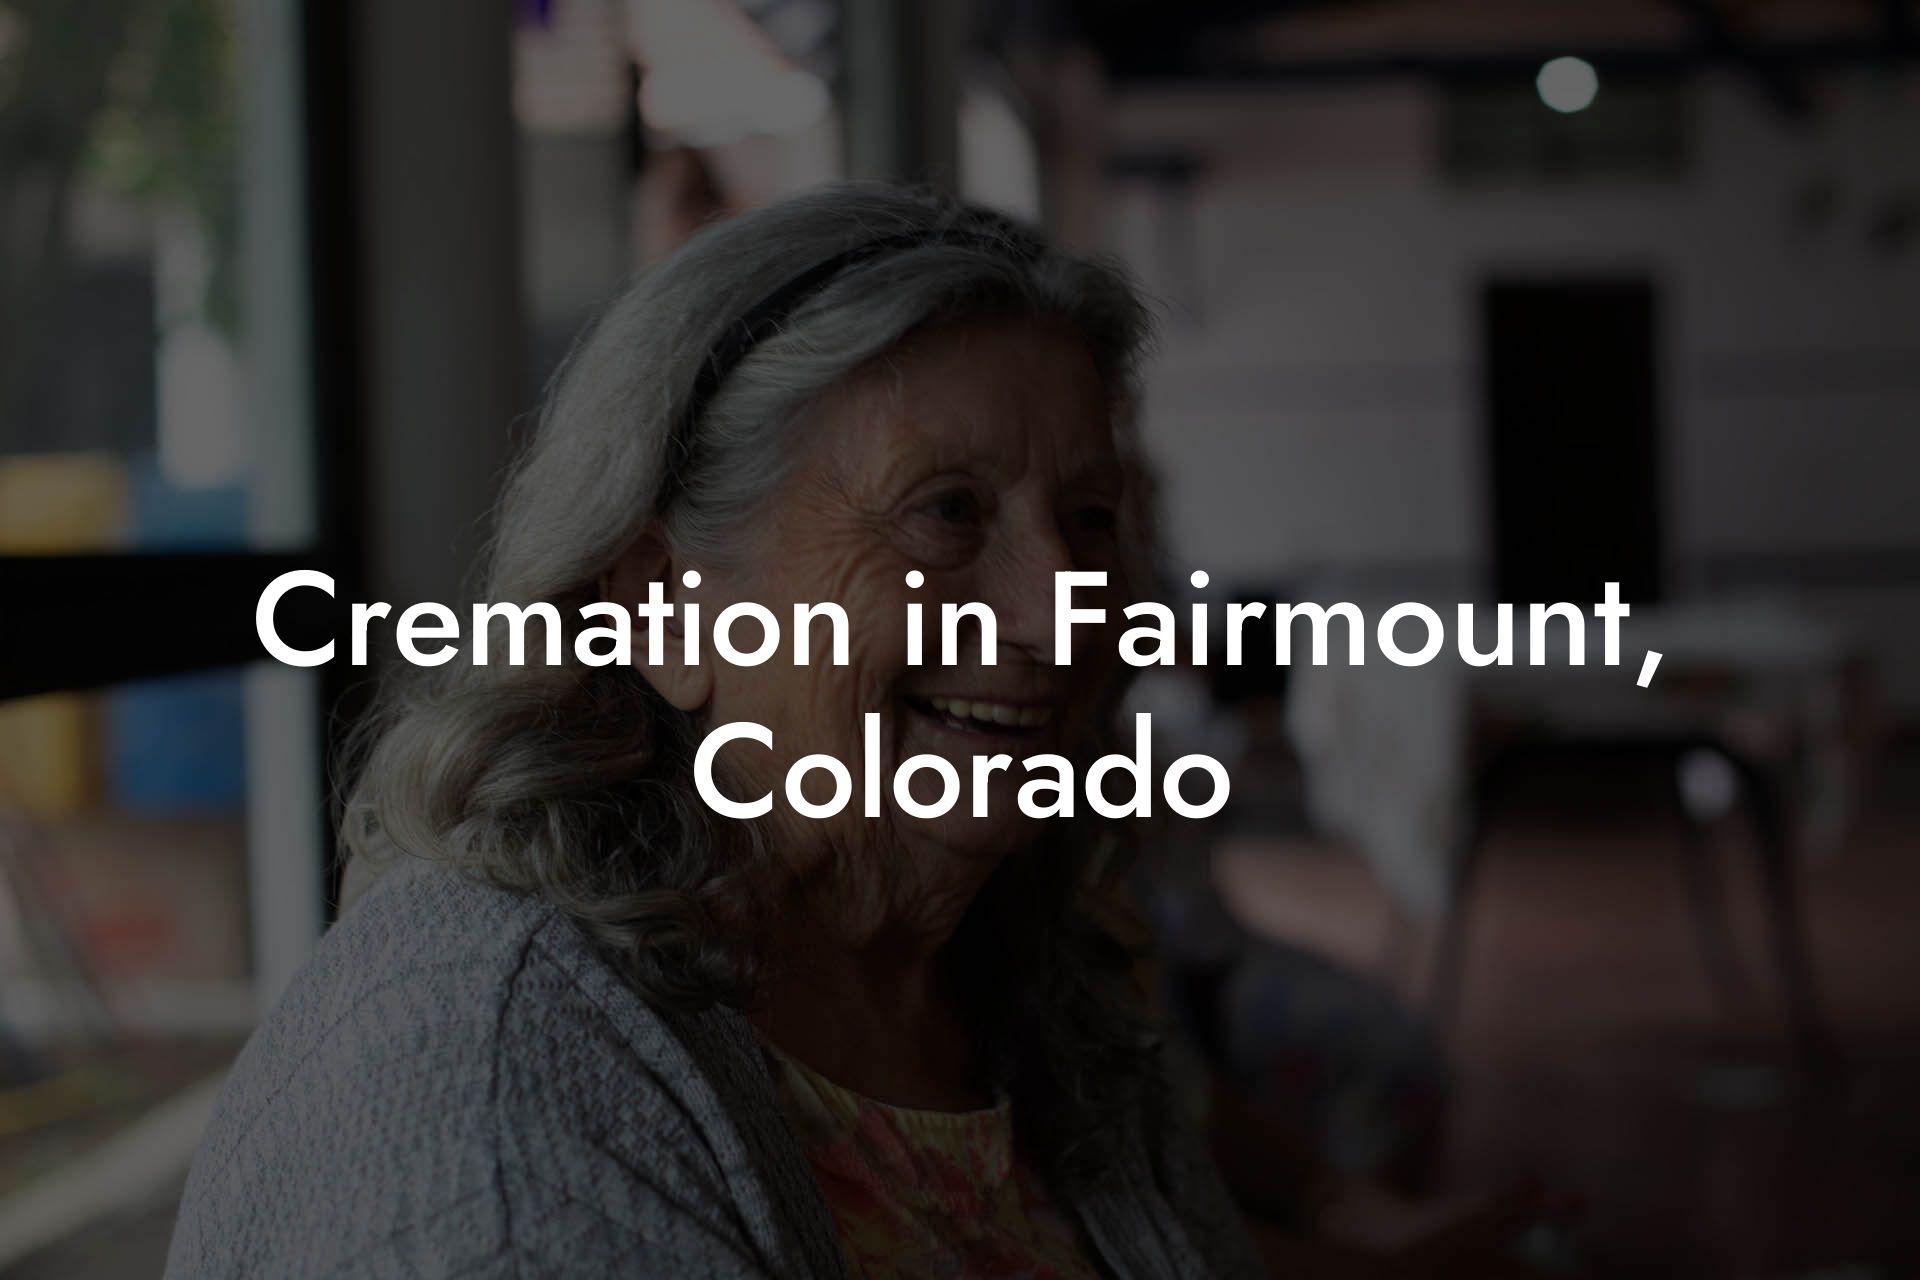 Cremation in Fairmount, Colorado